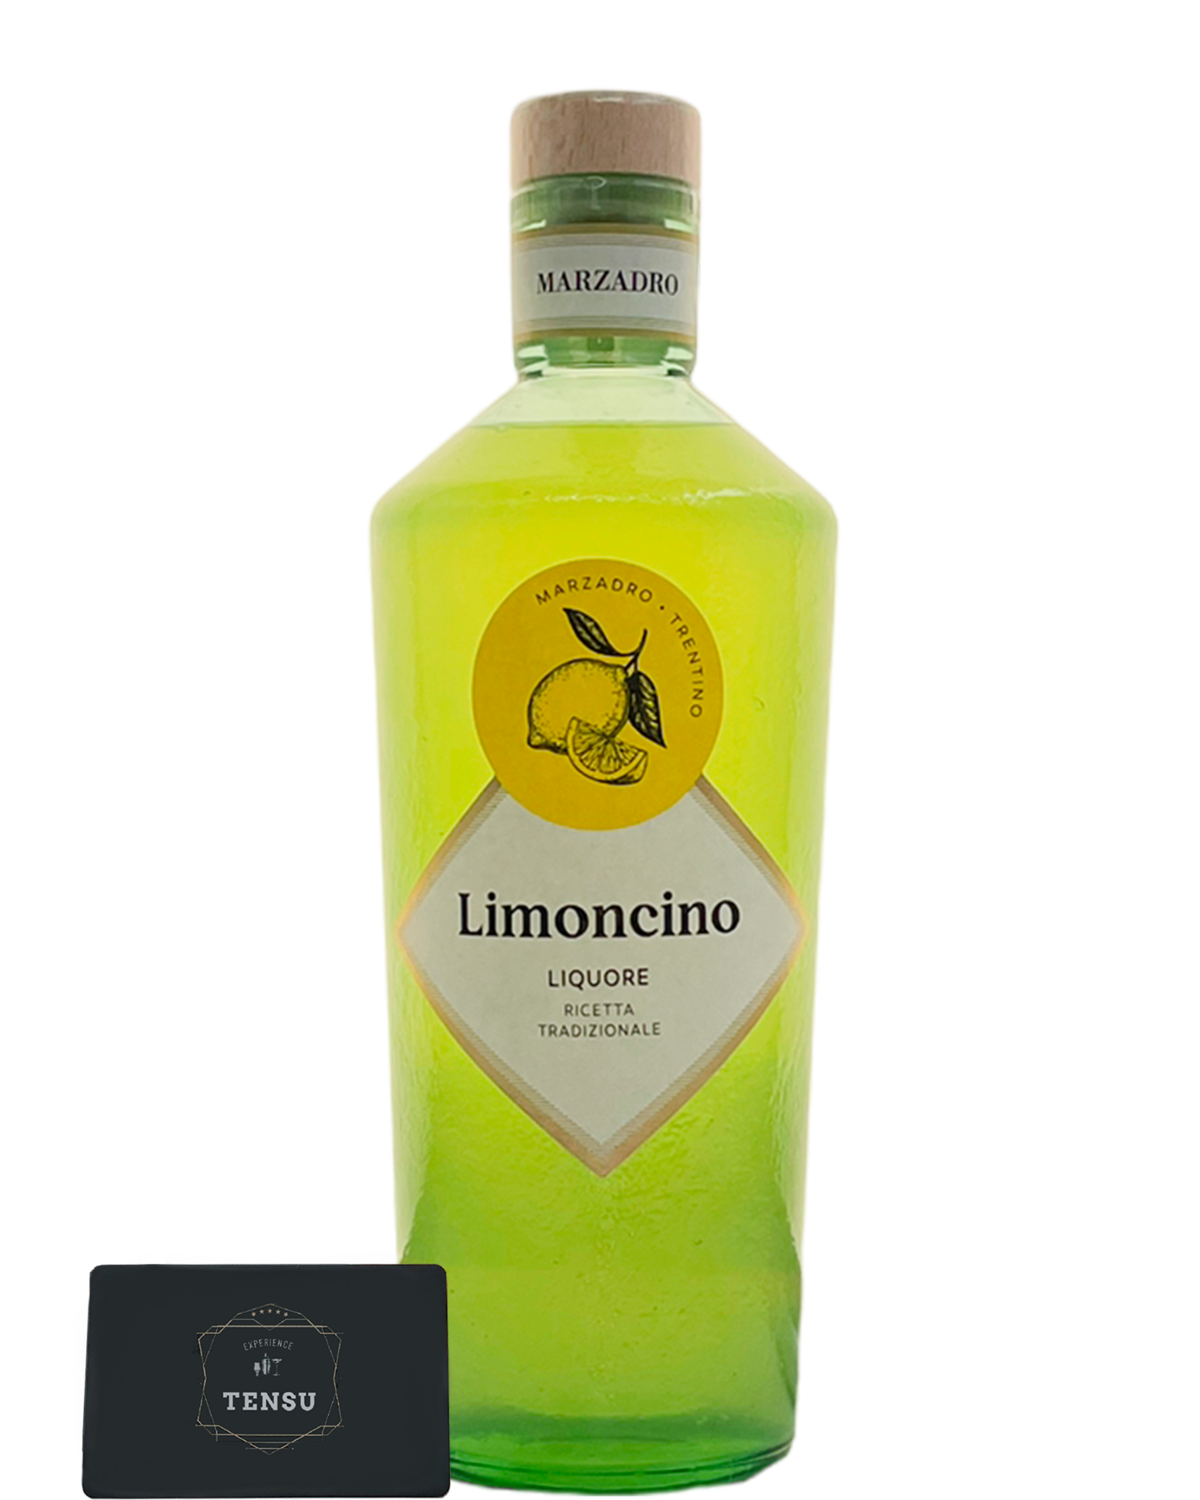 Marzadro Liquore Limoncino Tradizionale 35.0 (70CL) "OB"